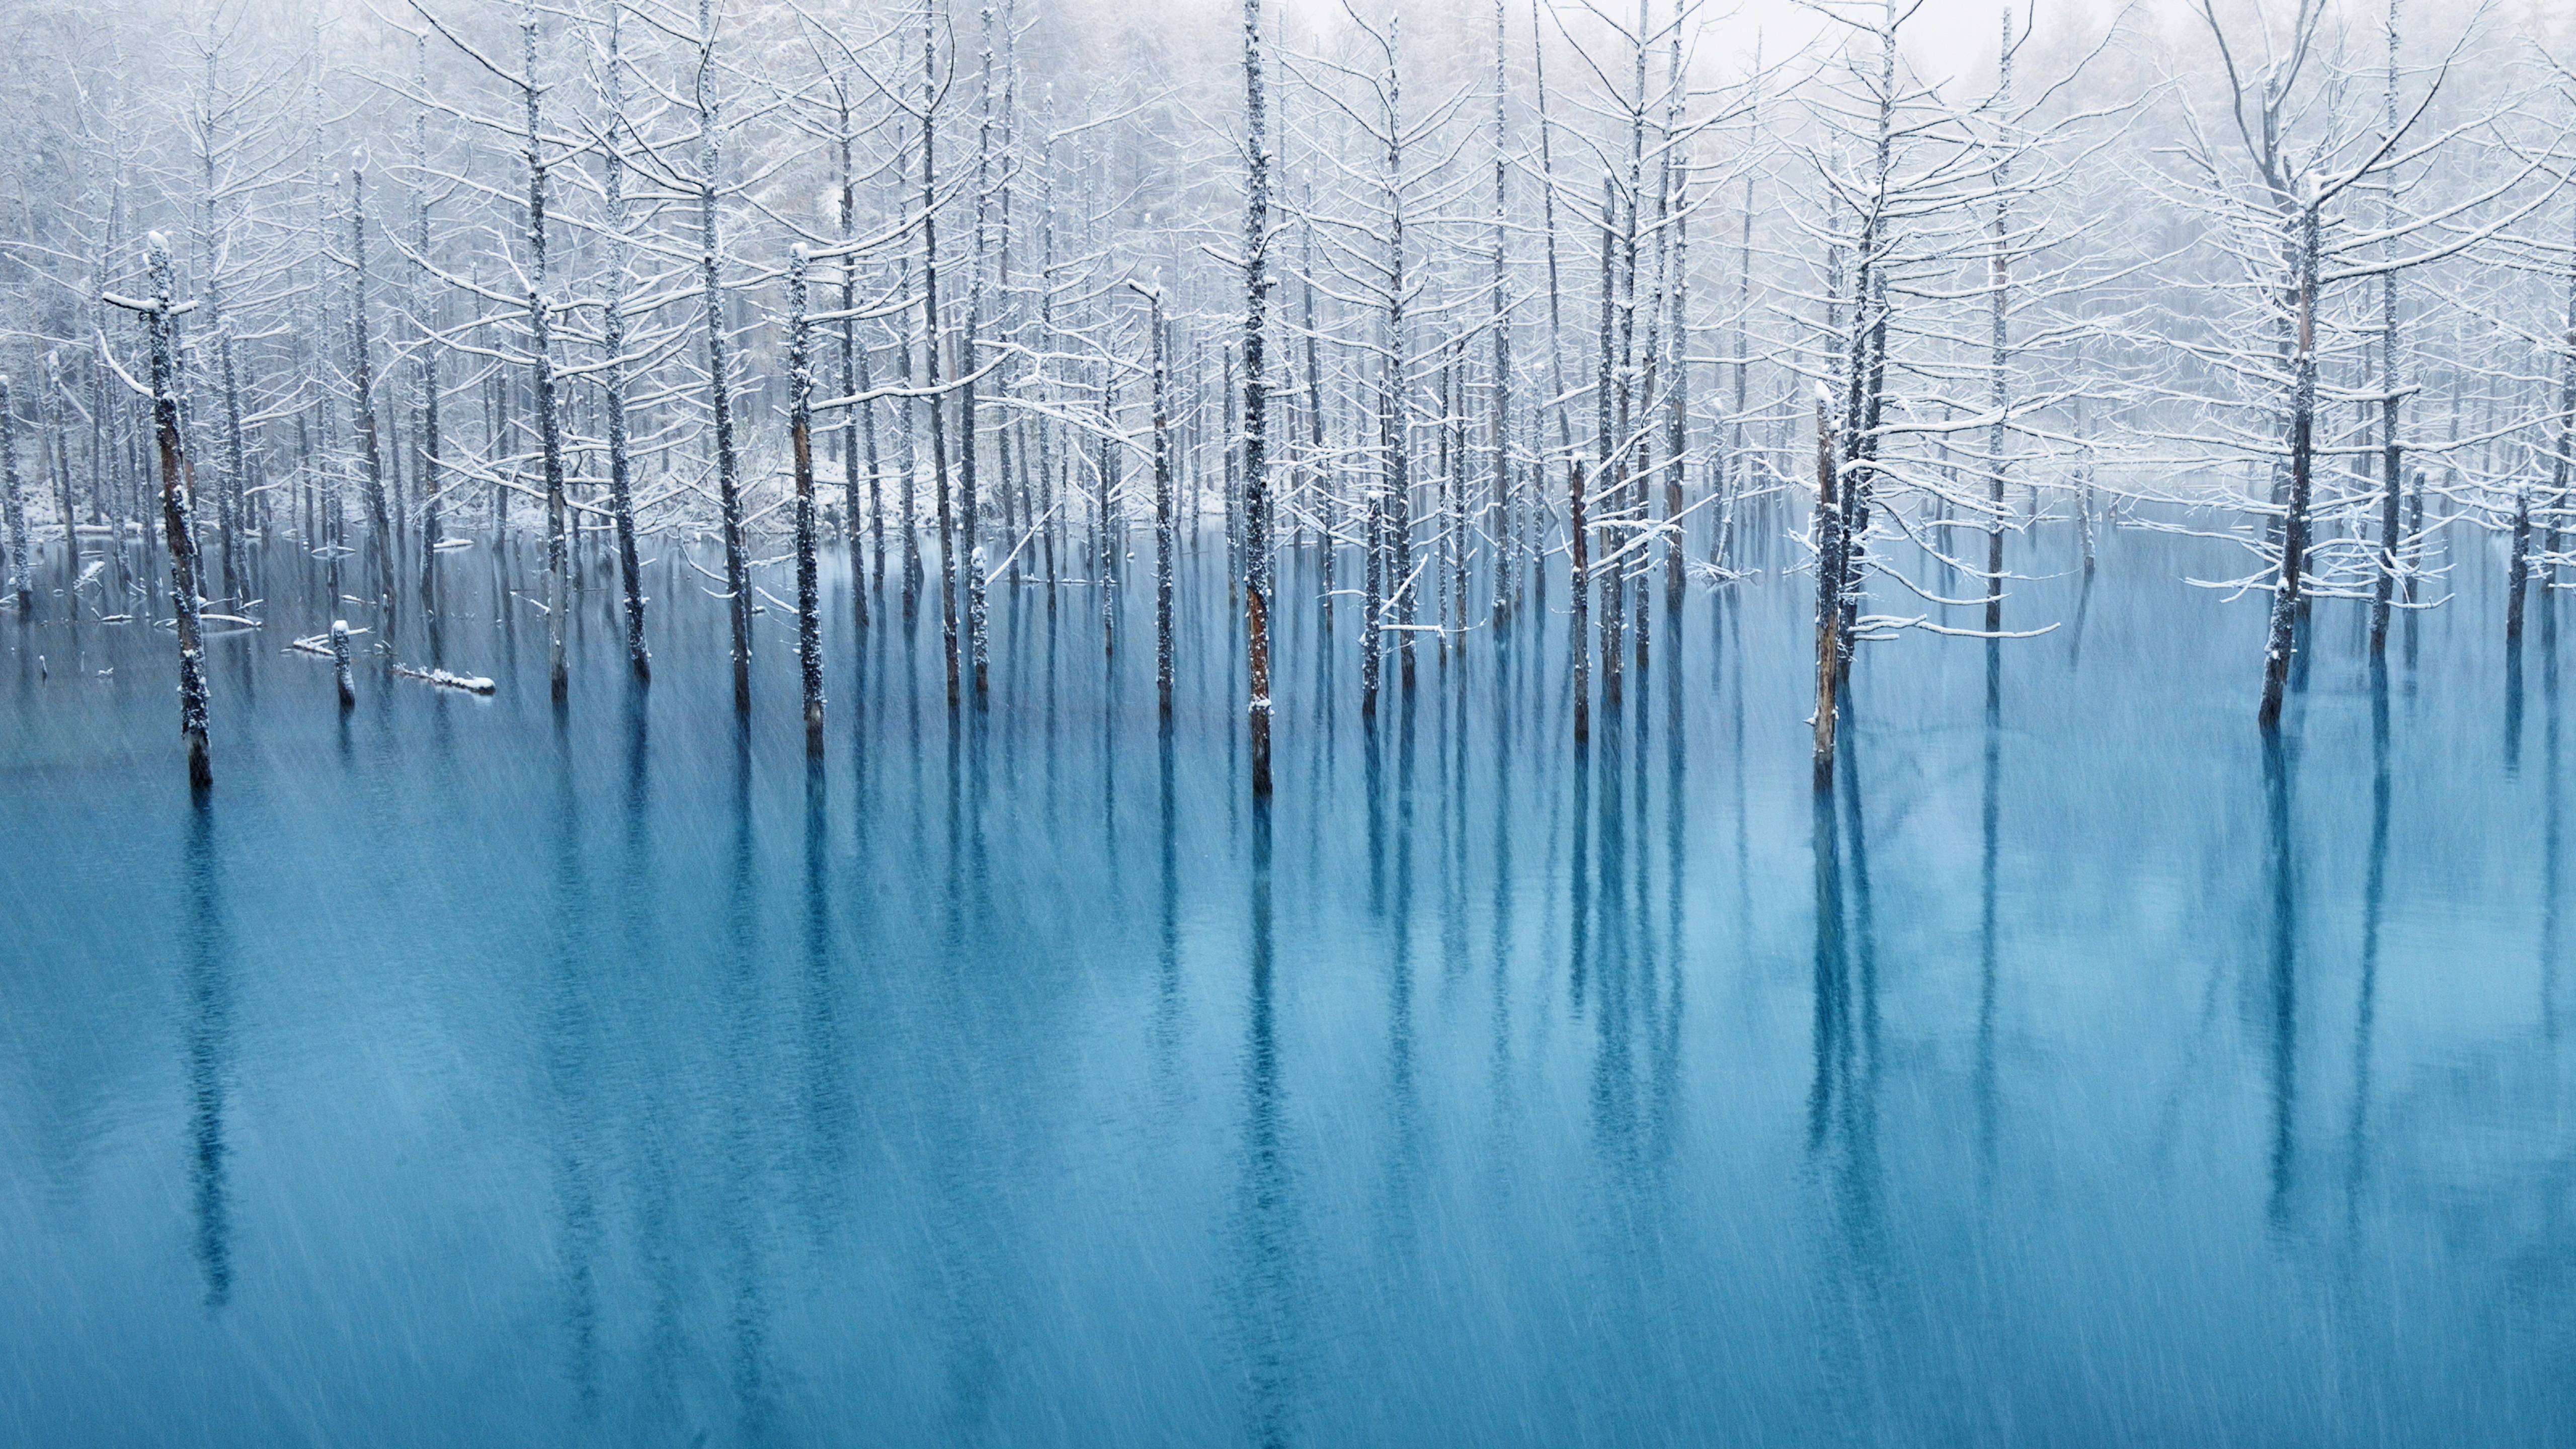 Лес затопленный водой. Голубое озеро Хоккайдо. Озеро Хоккайдо Япония. Отражение леса в воде. Зимний пейзаж в голубых тонах.